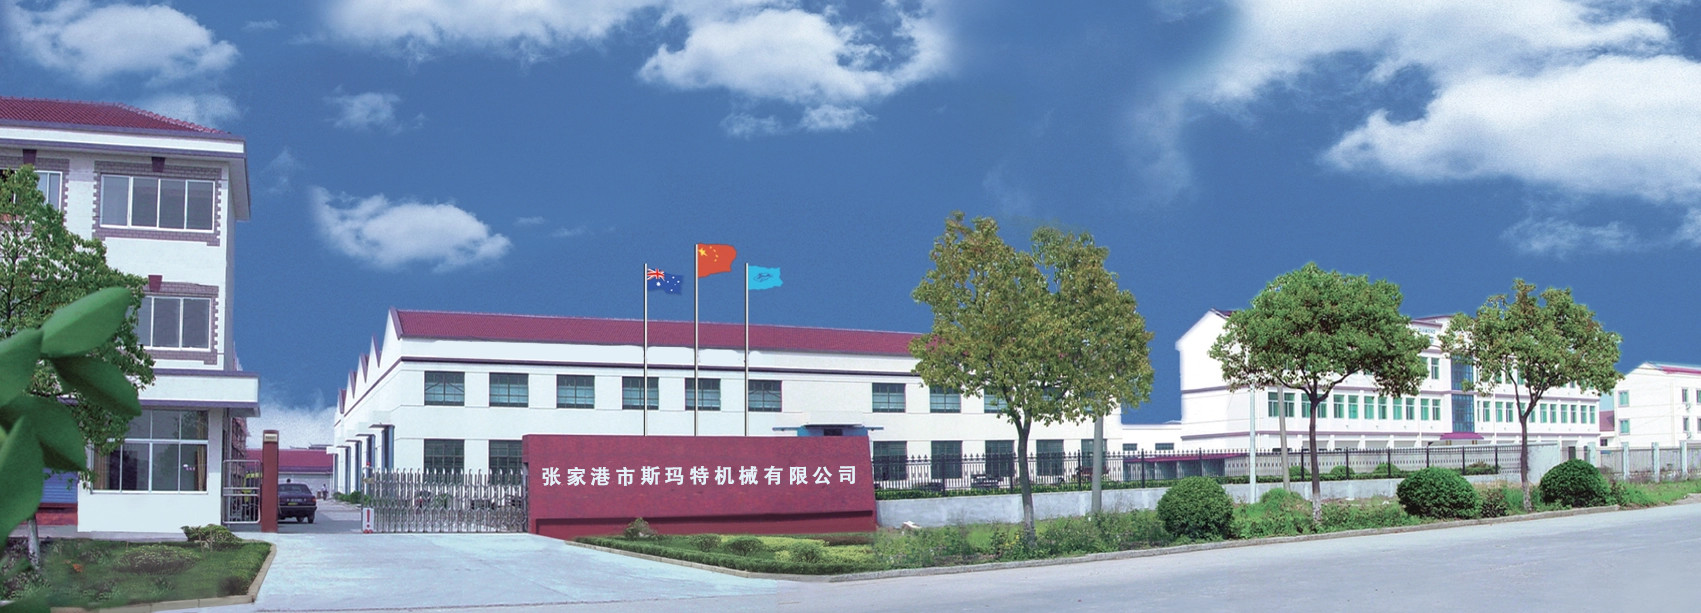 zhangjiagang smart machinery co.,ltd